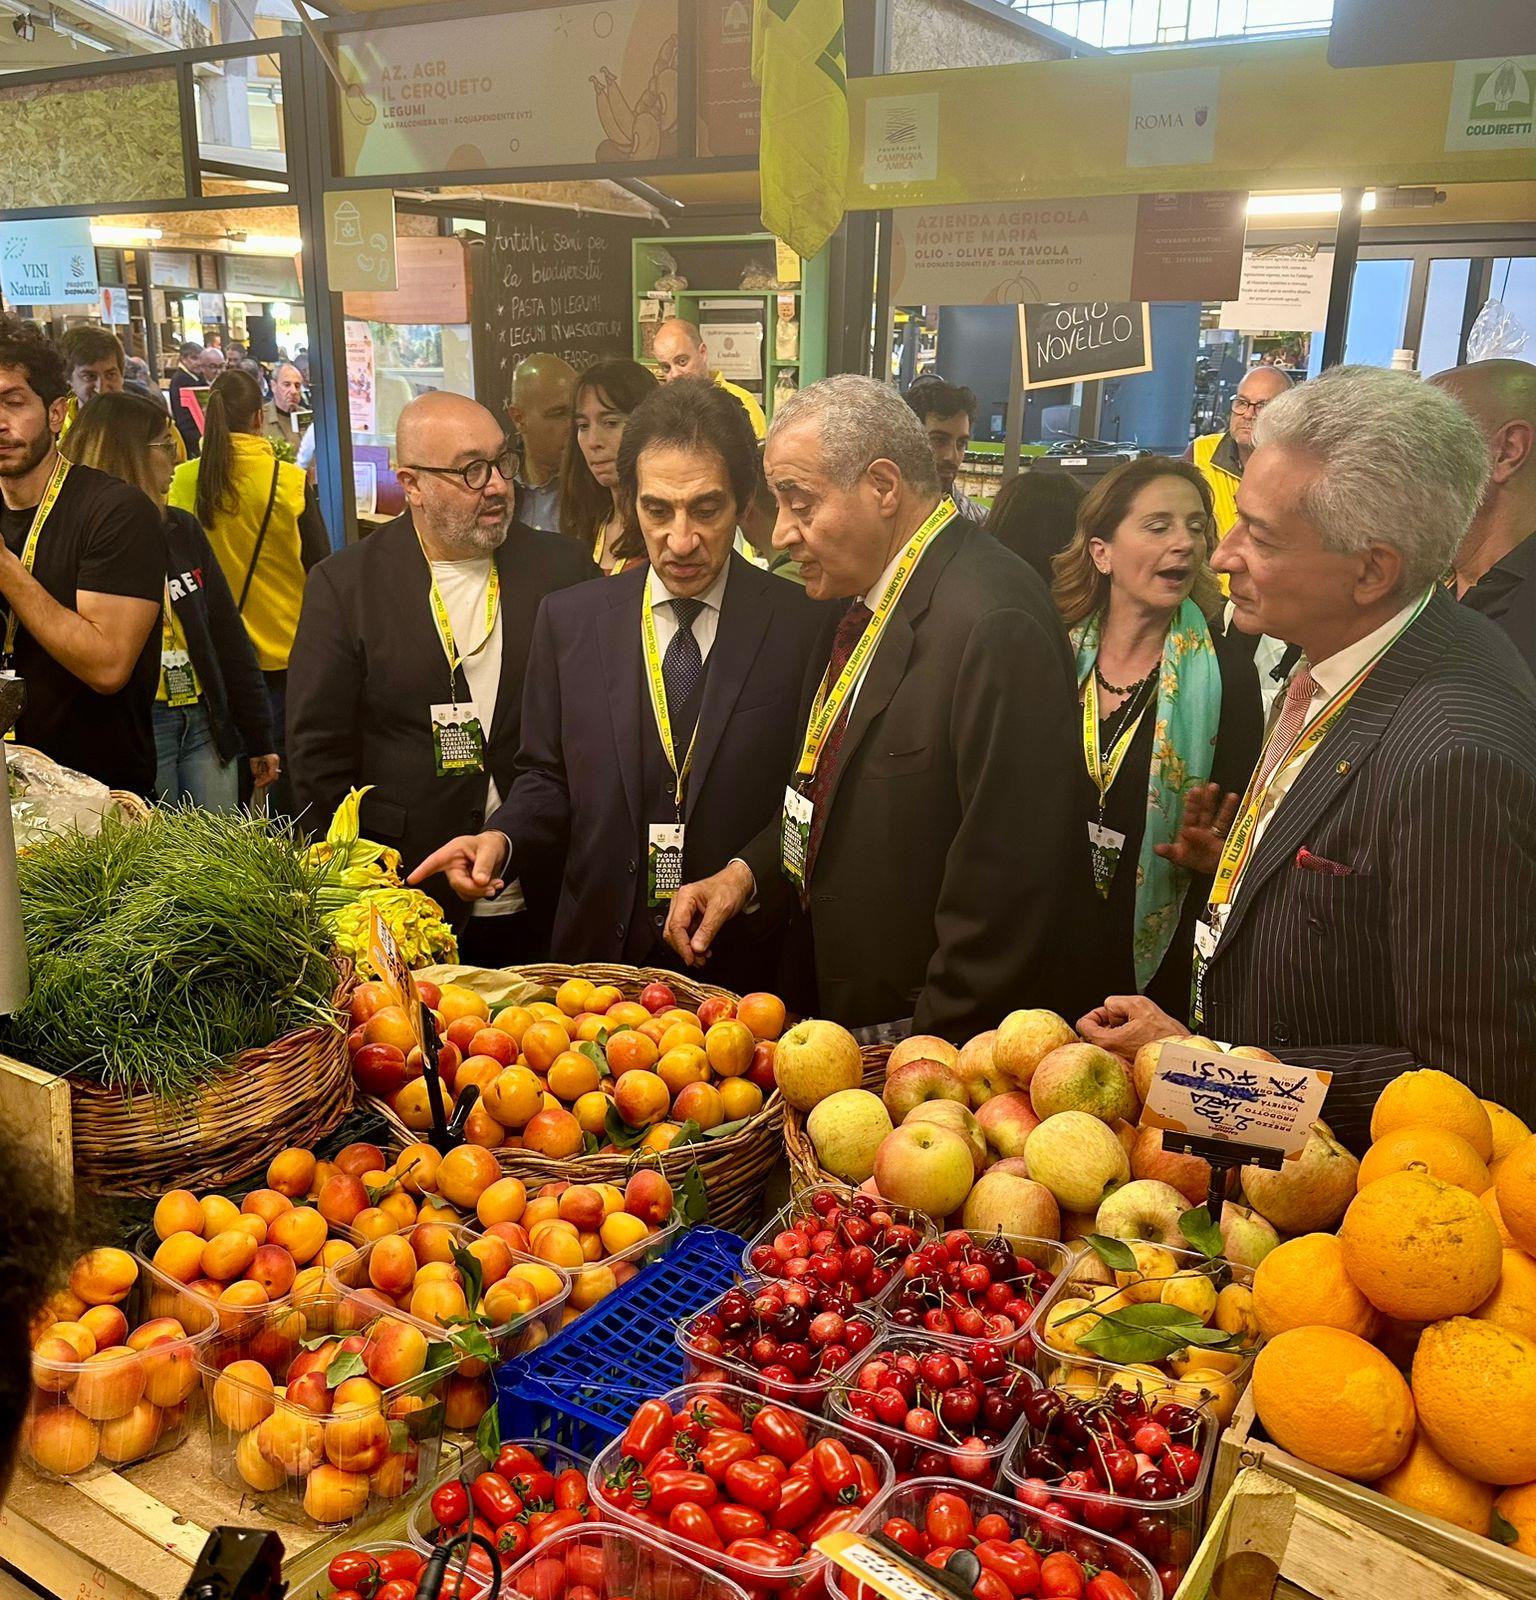 بسام راضي يستقبل وزير التموين بروما ويتفقدان معرض المنتجات الزراعية 